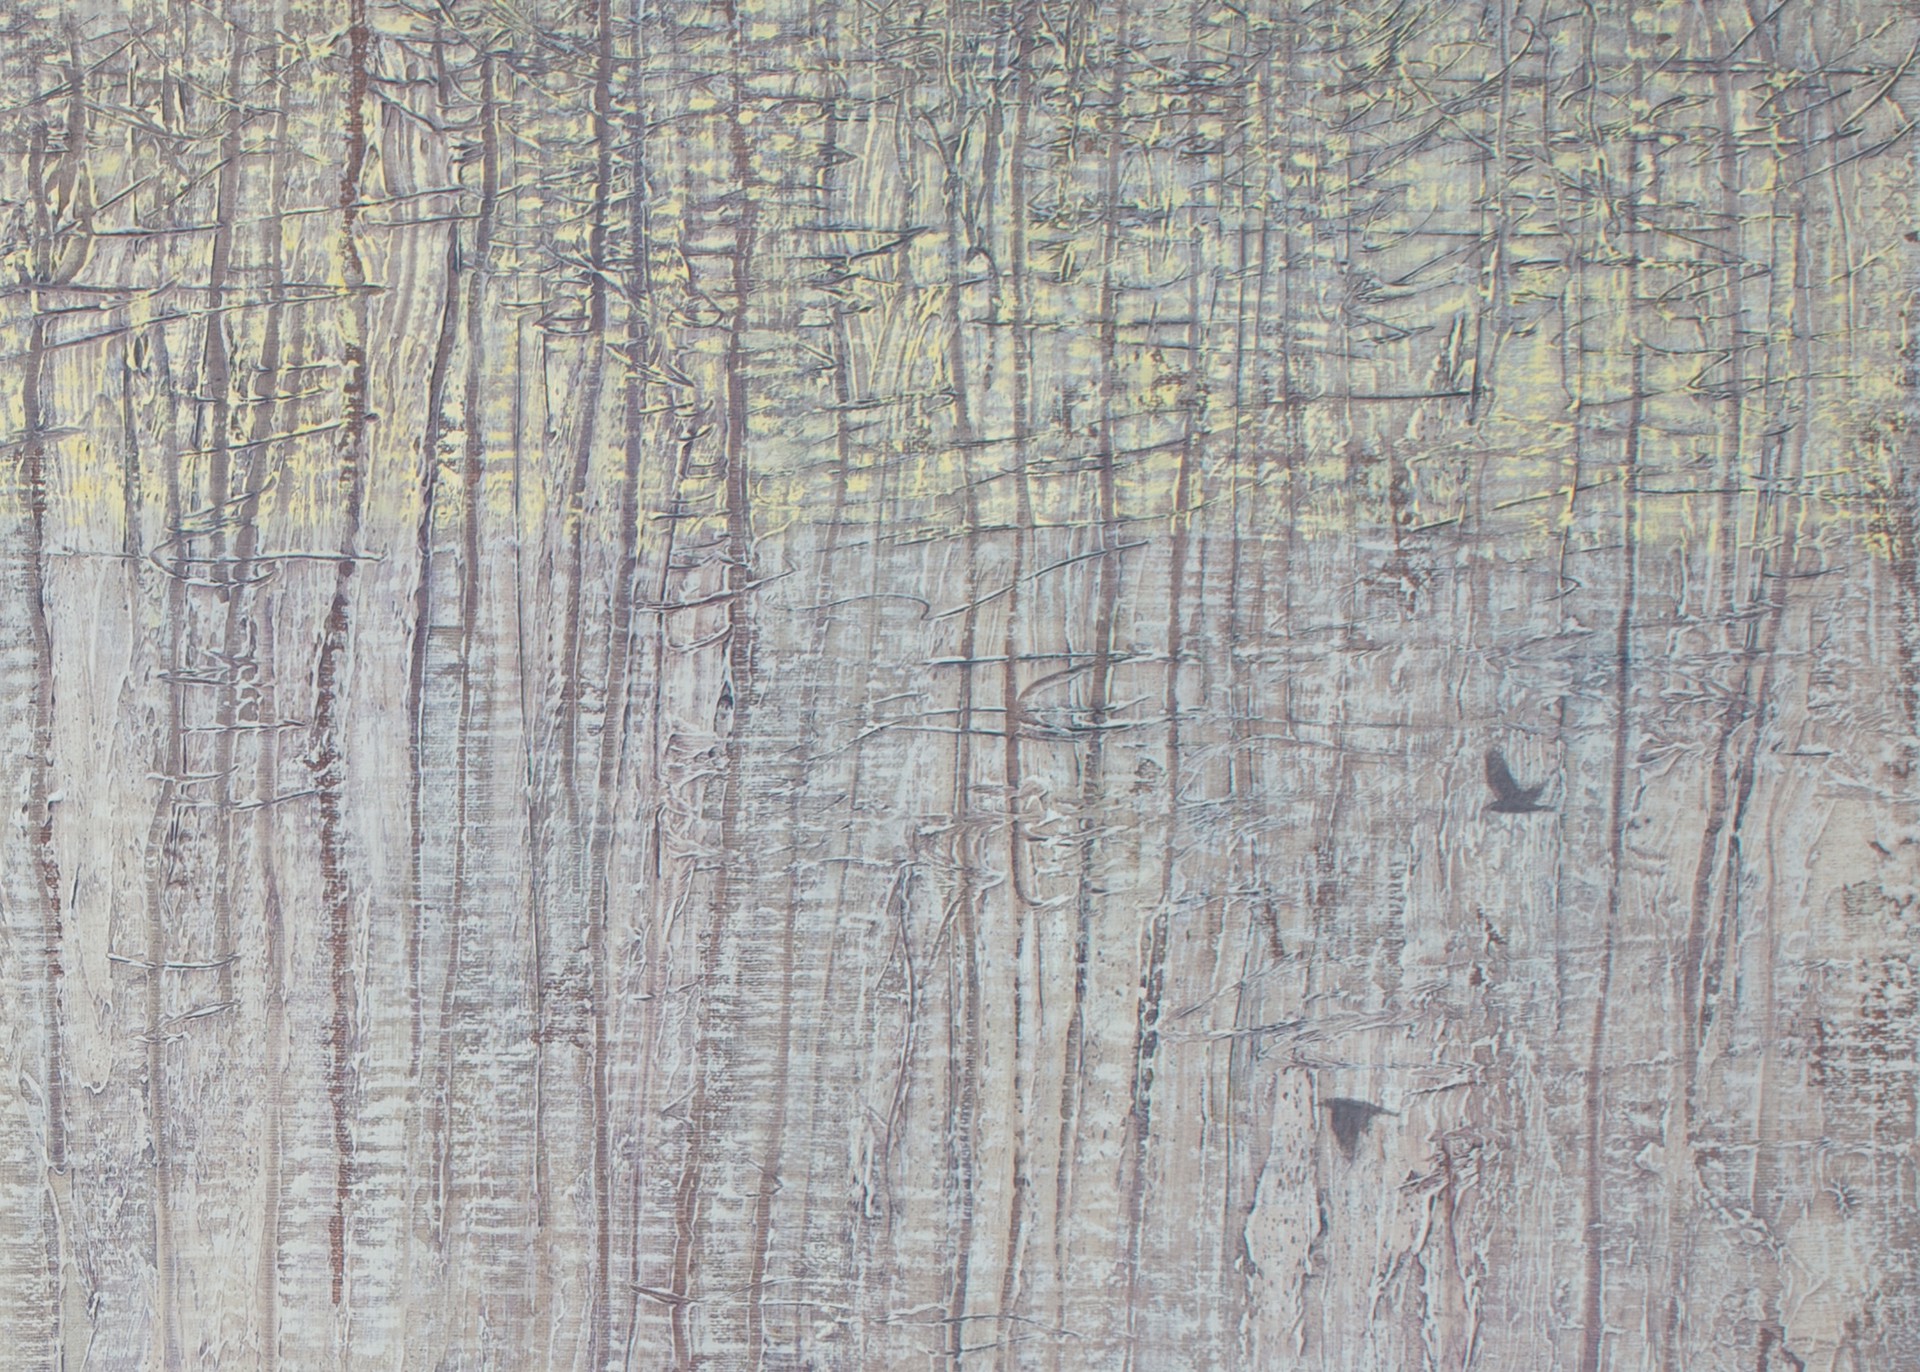 Winter Forest Textures by David Grossmann